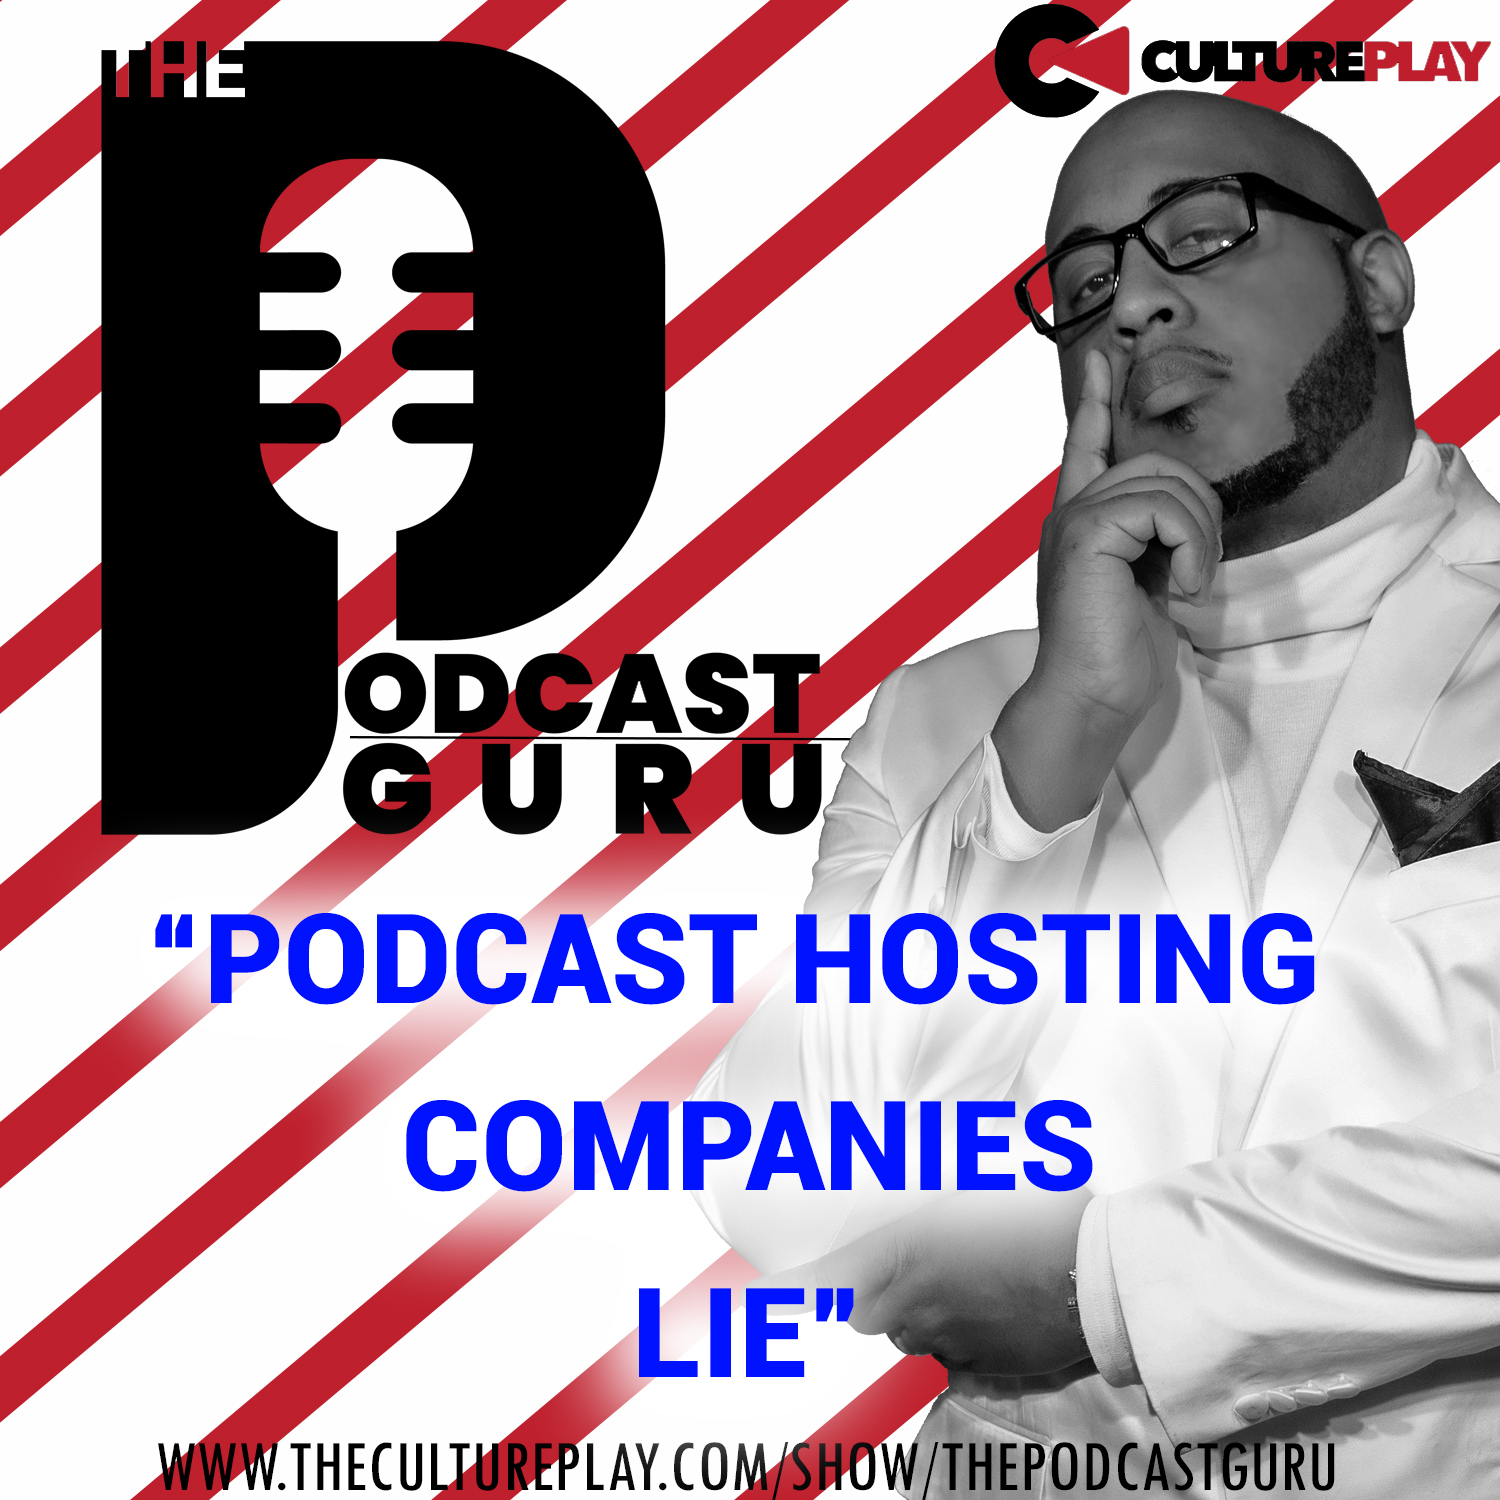 Podcast Guru - Podcast Hosting Companies Lie